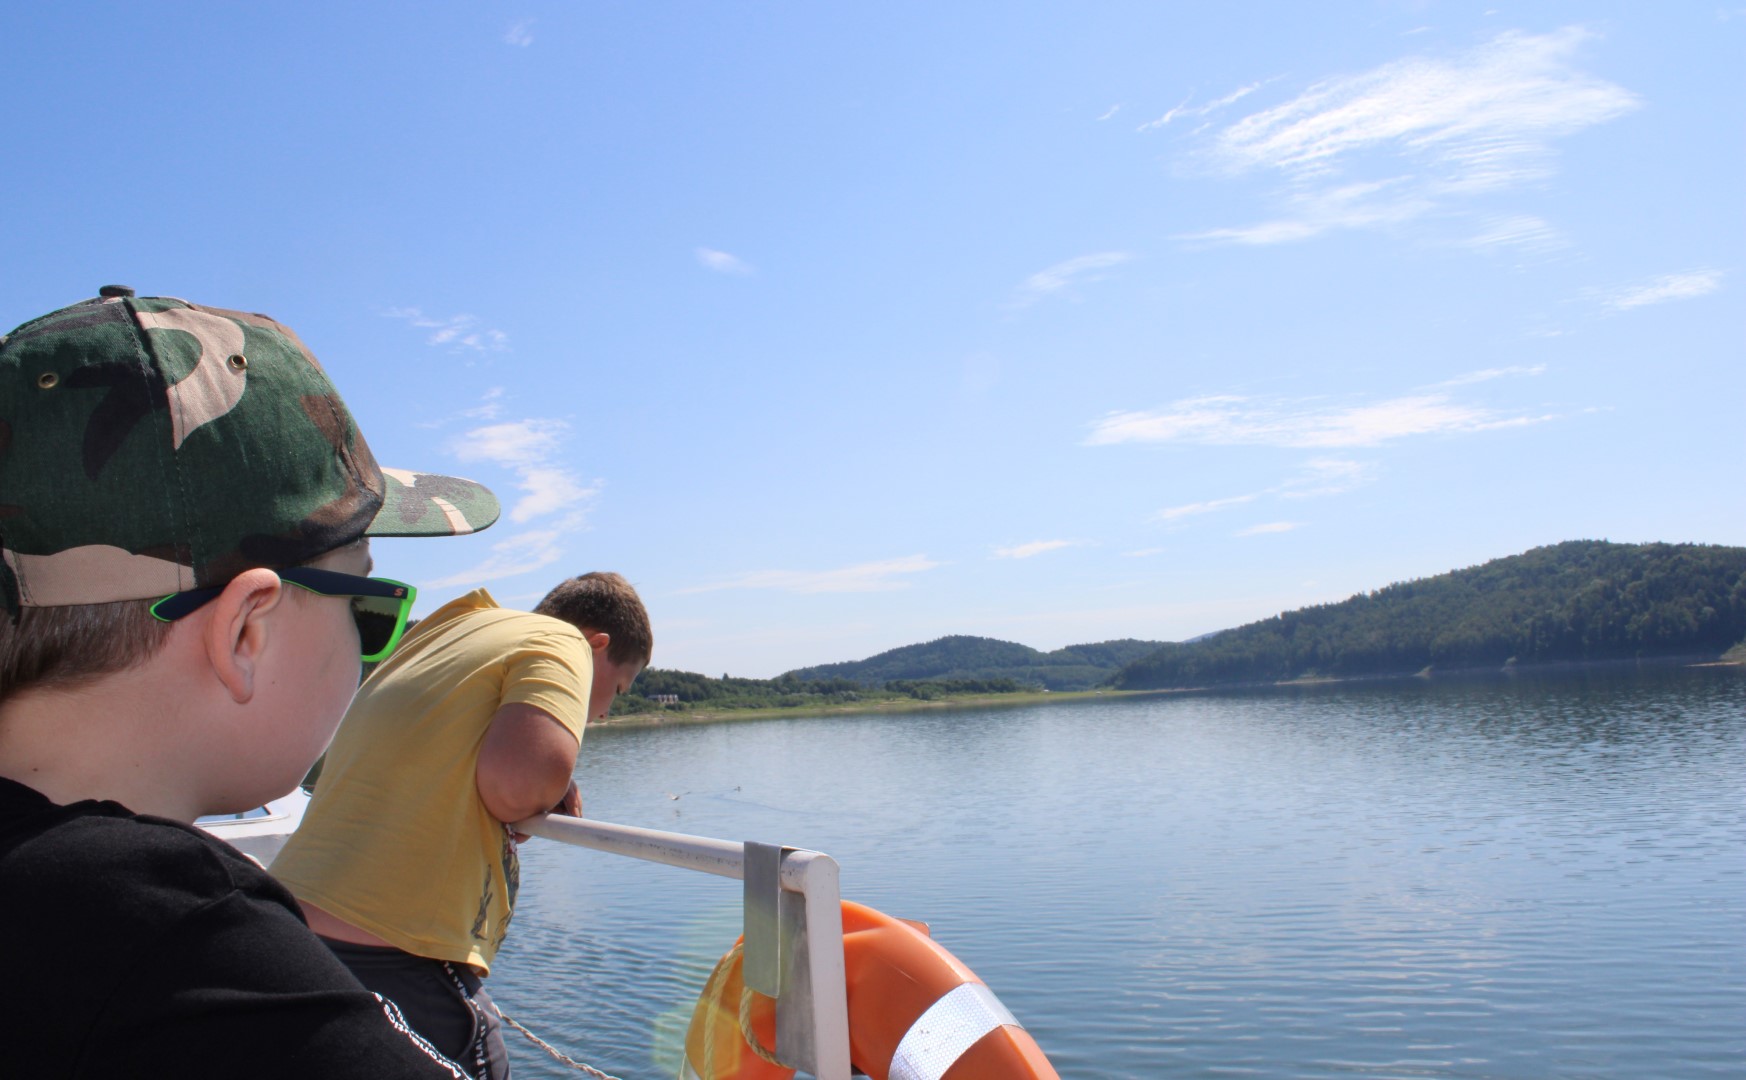 Zdjęcie przedstawia dwóch chłopców podczas rejsu statkiem po Jeziorze Mucharskim, wyglądają oni przez burtę, spoglądając na wodę.